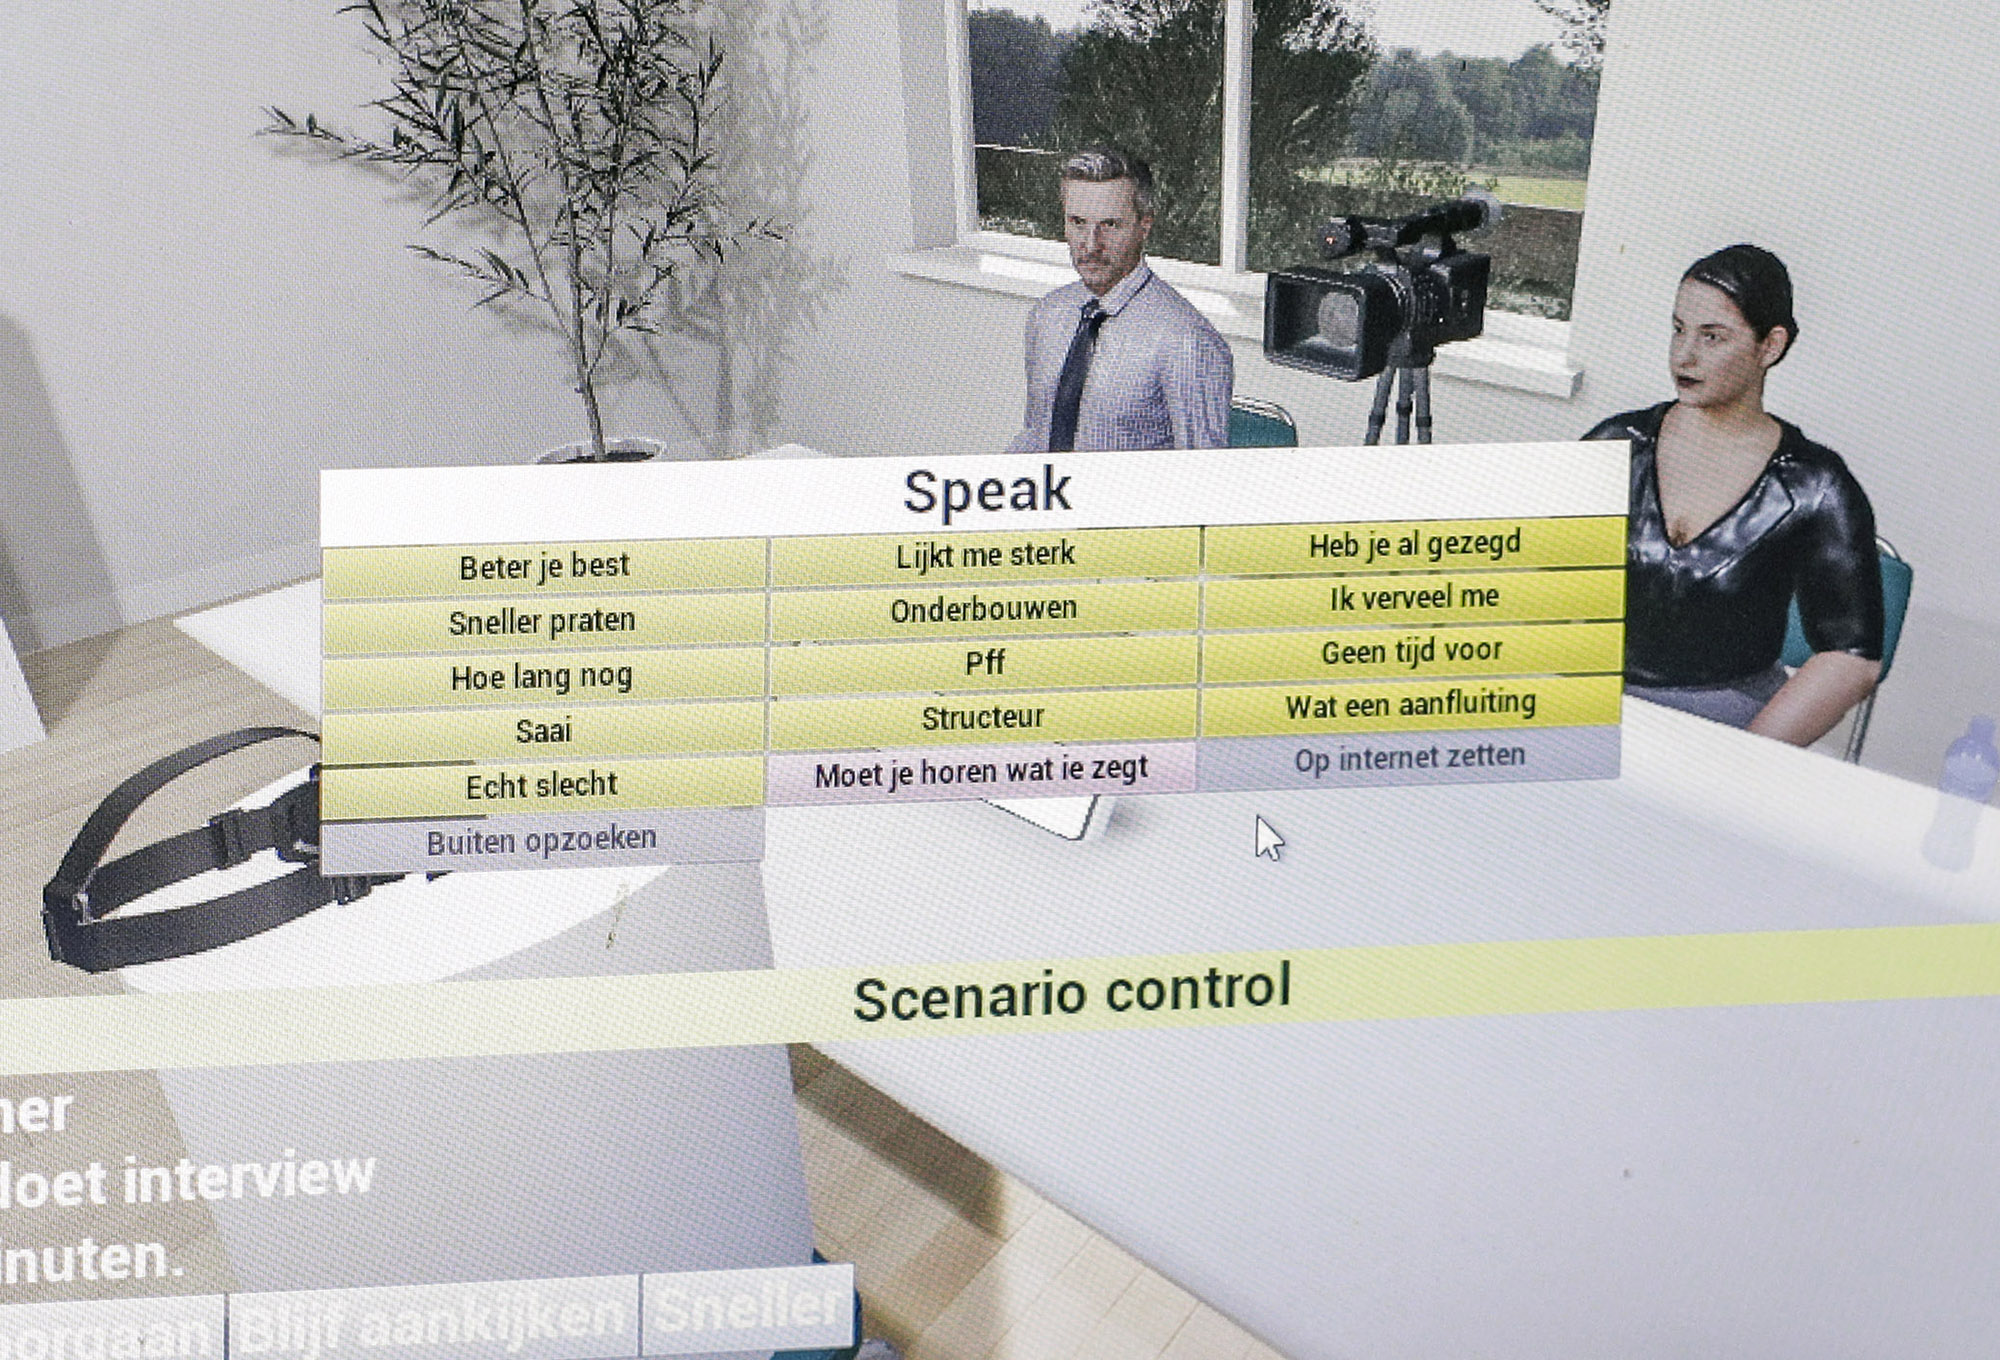 In nauw overleg met team Visualisatie werden de scenario’s van het virtuele sollicitatiegesprek vastgesteld en uitgeschreven.